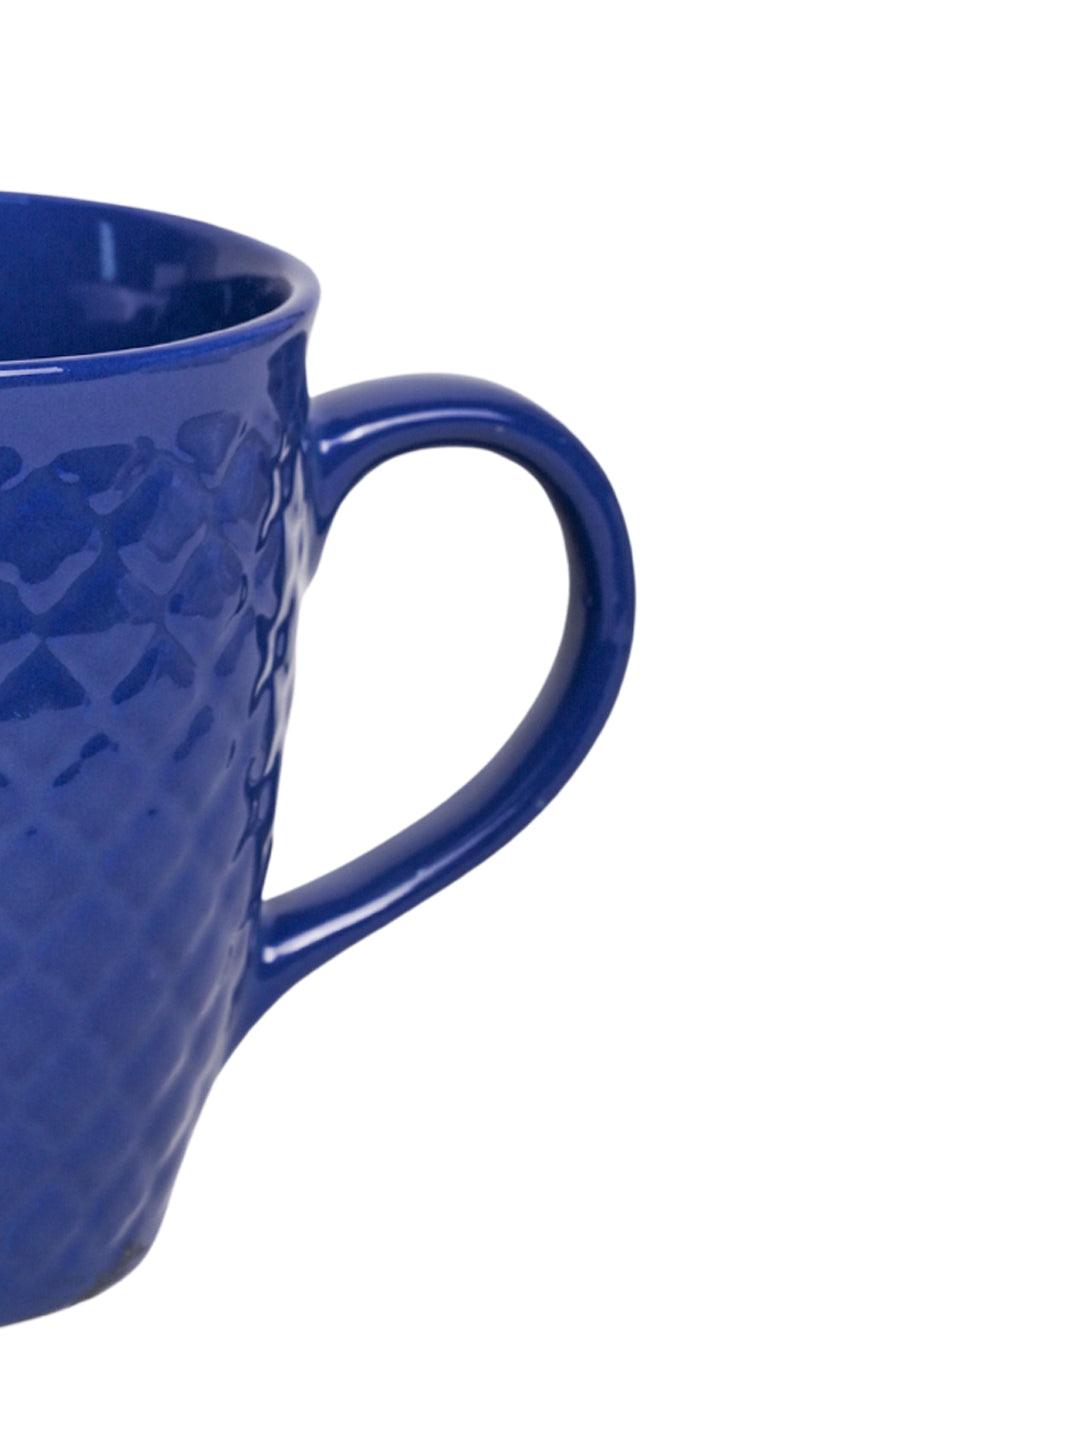 VON CASA Ceramic Coffee Mug - 320 Ml, Blue & Engrabed - MARKET 99